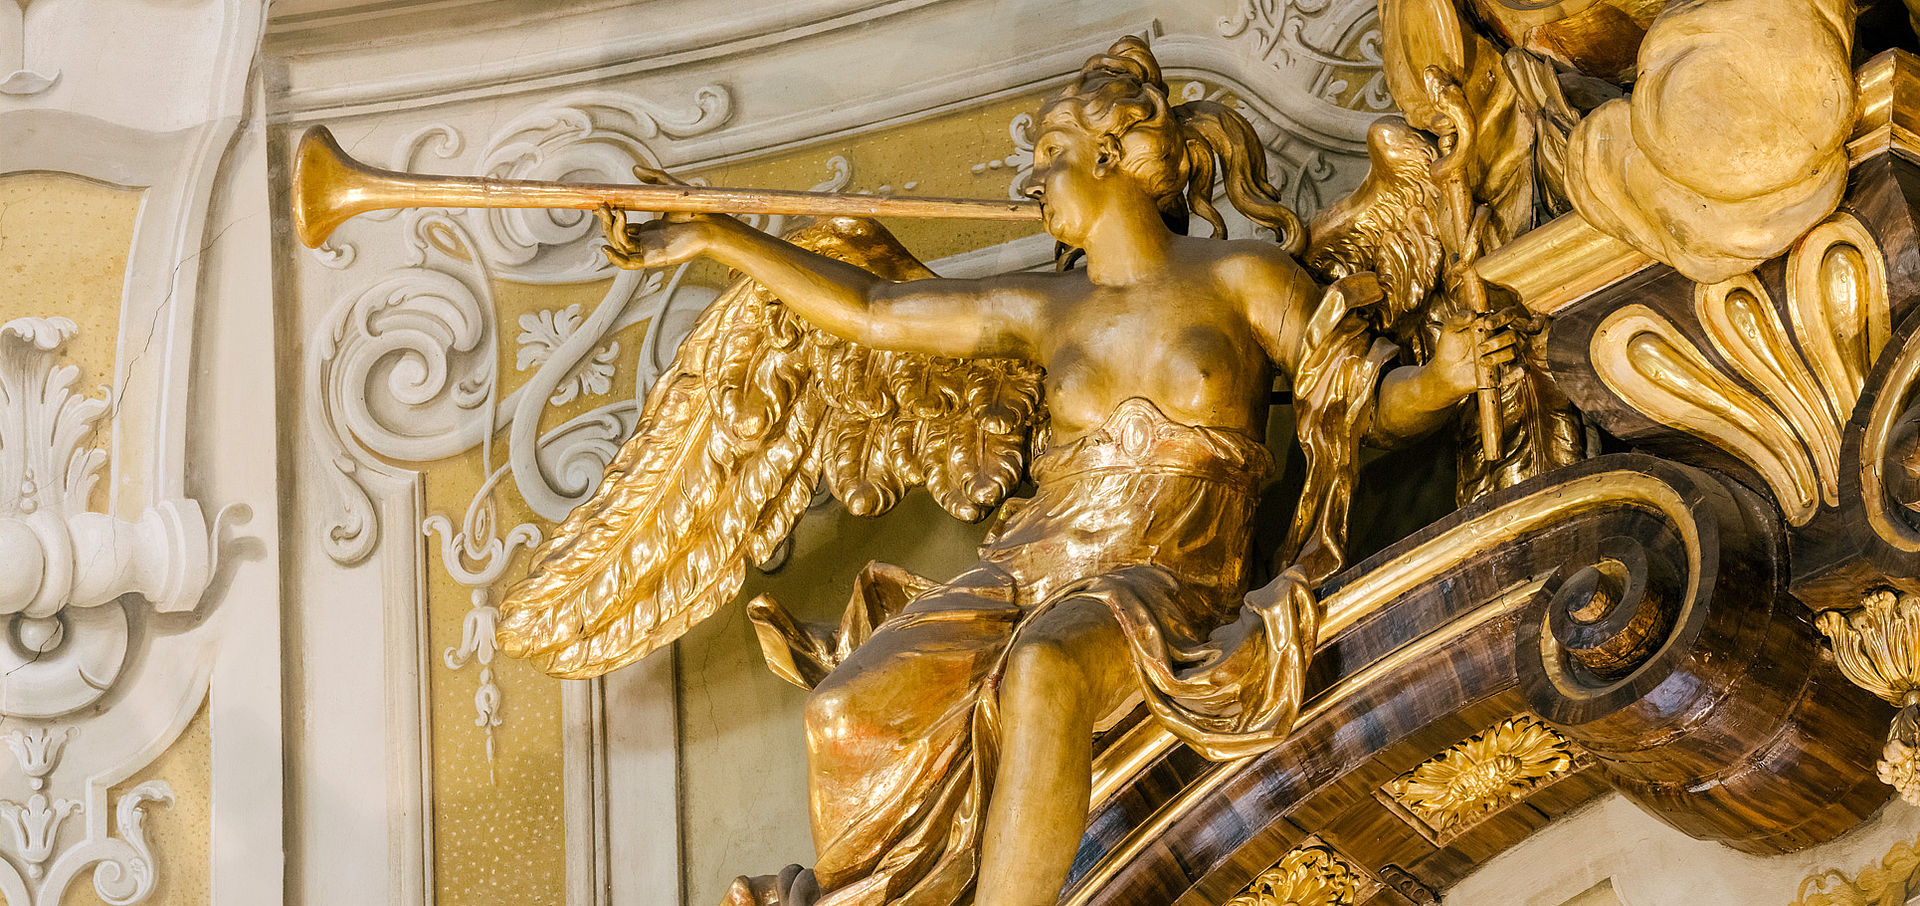 Foto einer Statue, goldener Engel, der in eine Fanfare bläst